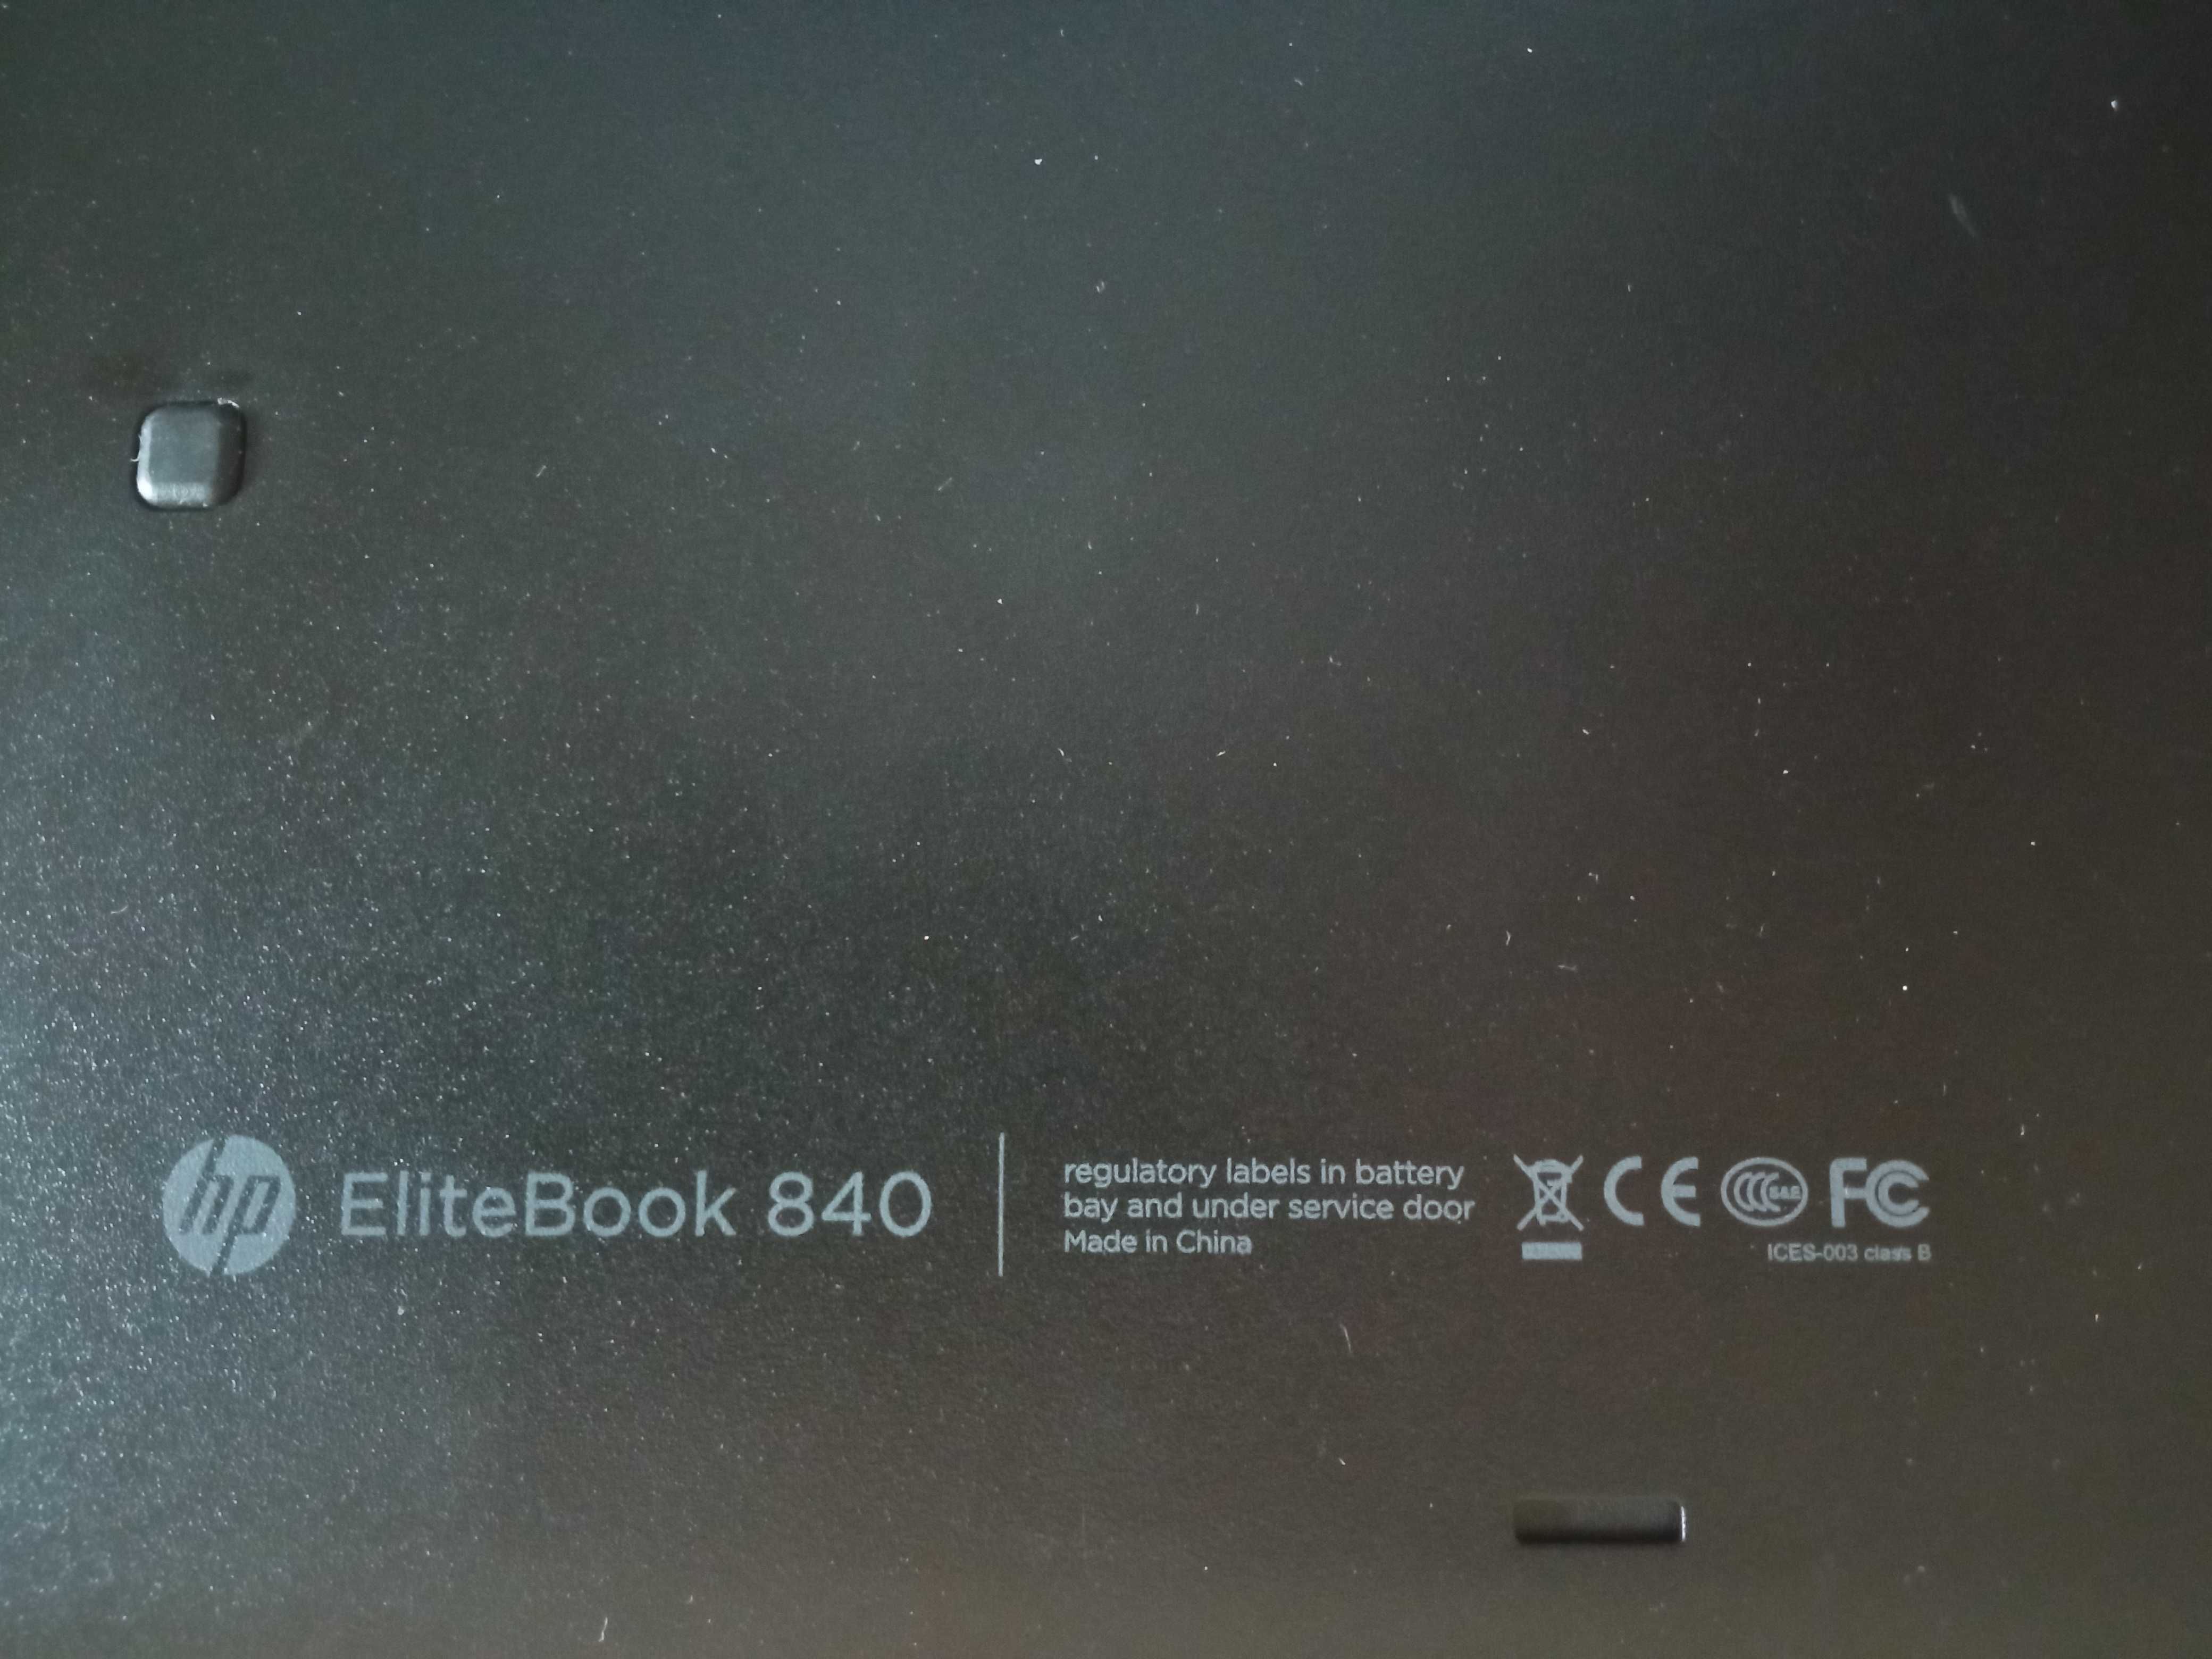 HP Elitebook 840 i5